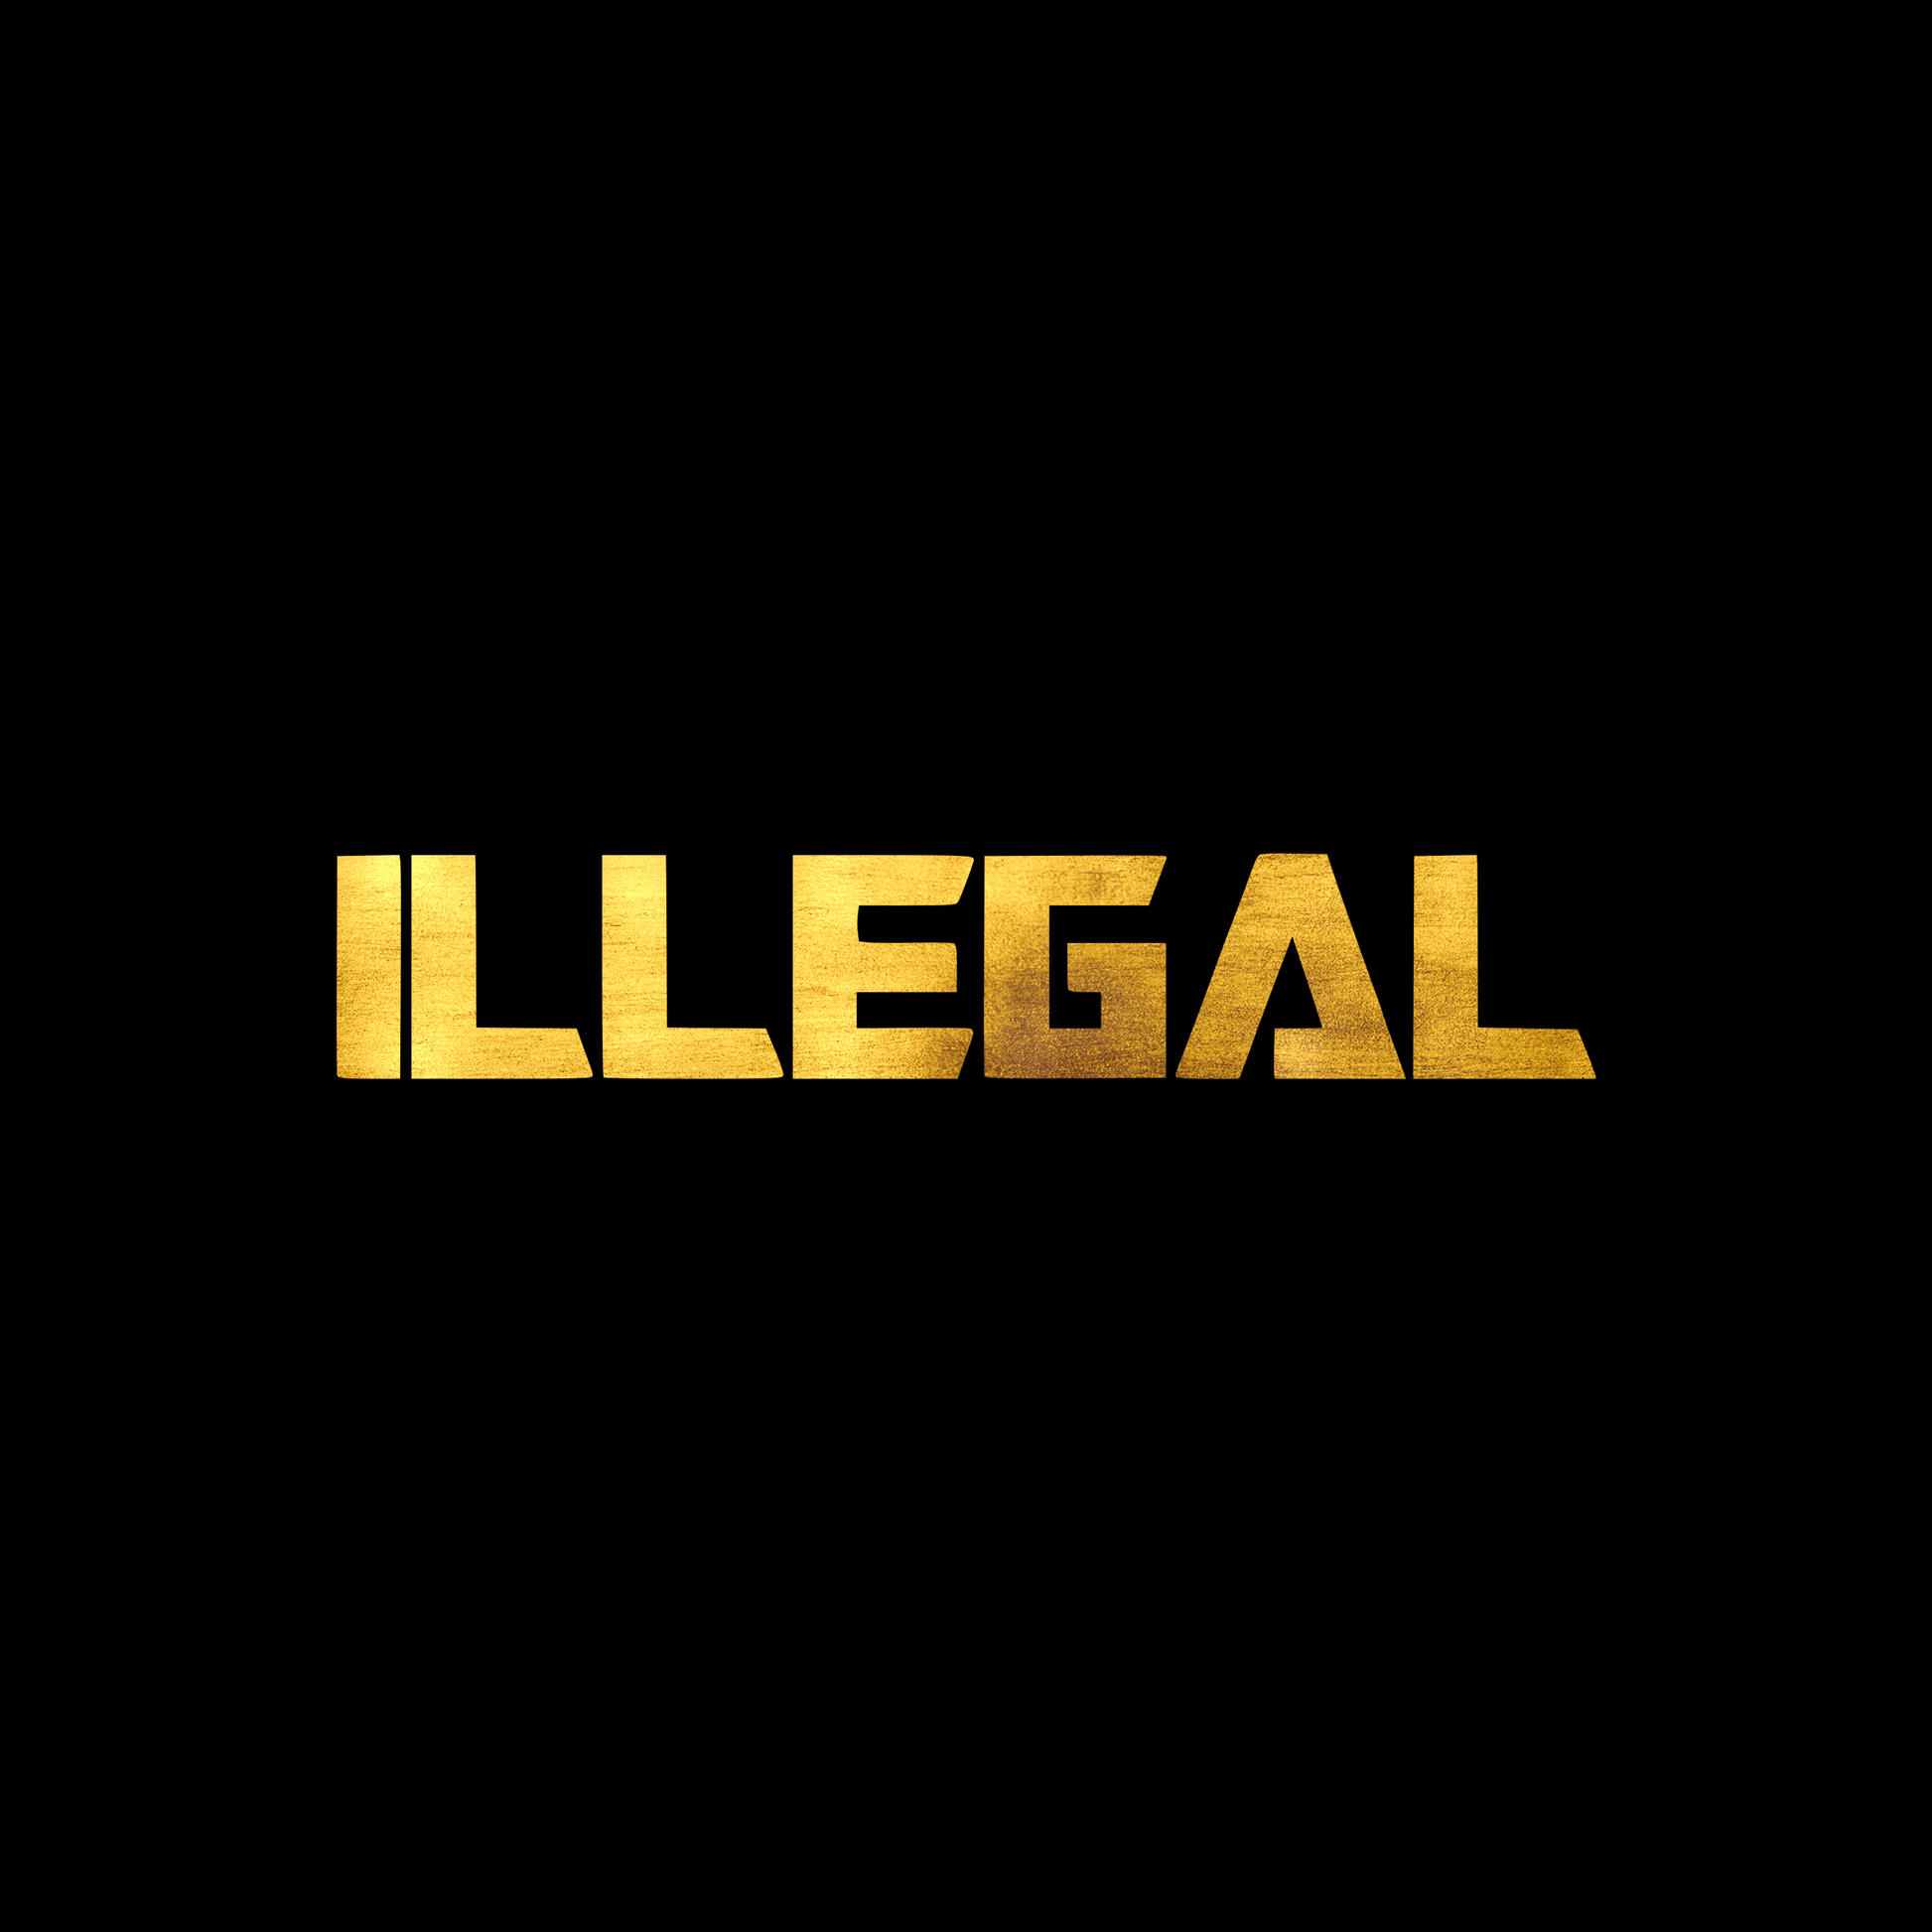 Illegal 2 sticker decal